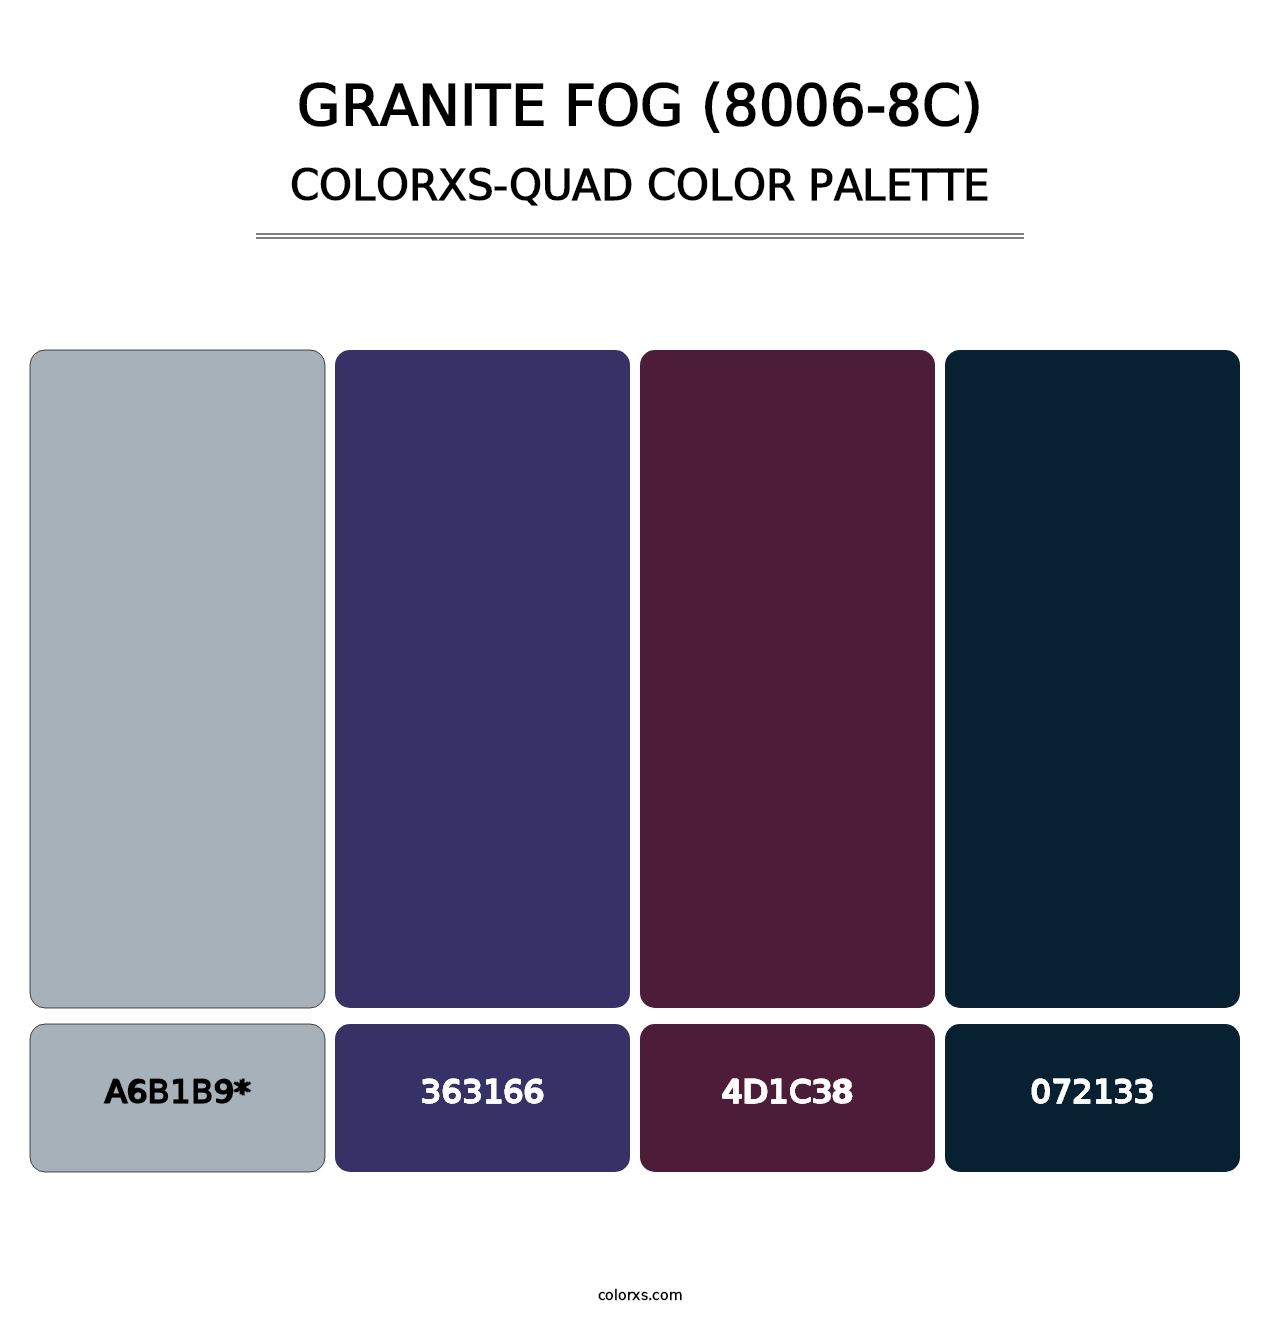 Granite Fog (8006-8C) - Colorxs Quad Palette